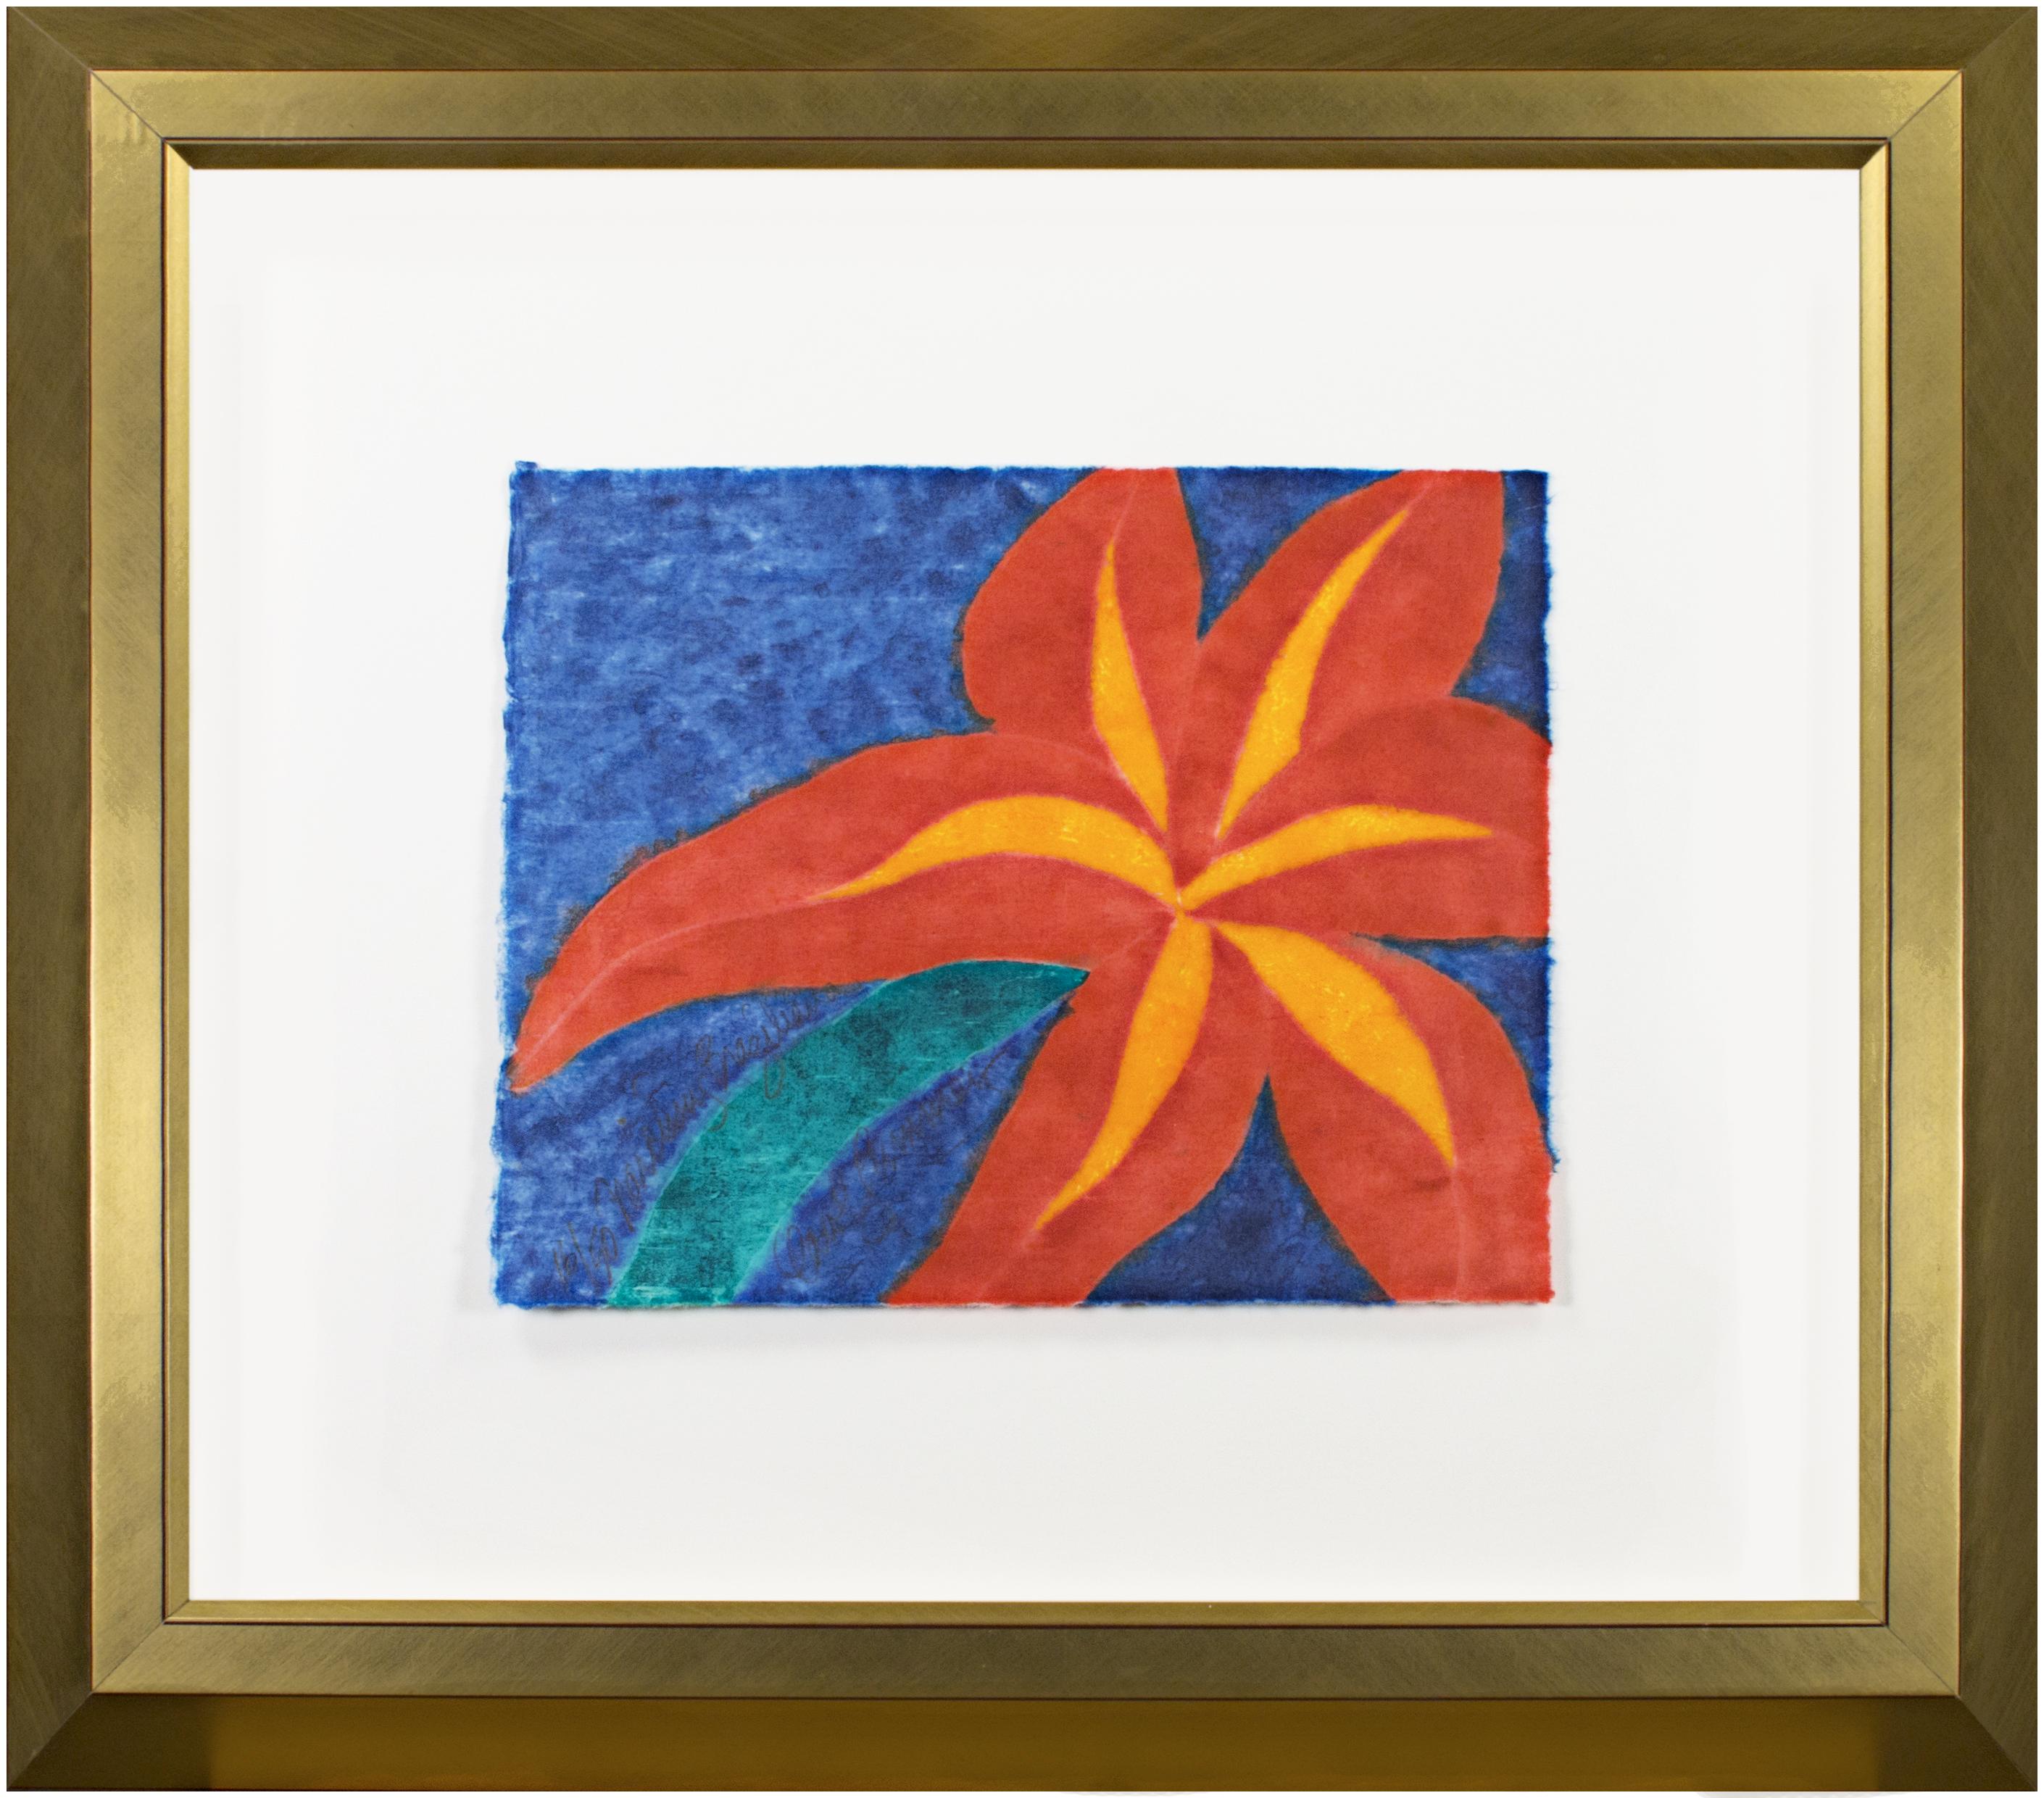 La présente œuvre est un exemple vibrant et coloré des gravures sur bois de Carol Summers. L'image est dominée par la forme d'une fleur tropicale rouge, cadrée de près autour des pétales comme dans les photographies d'Imogen Cunningham et les